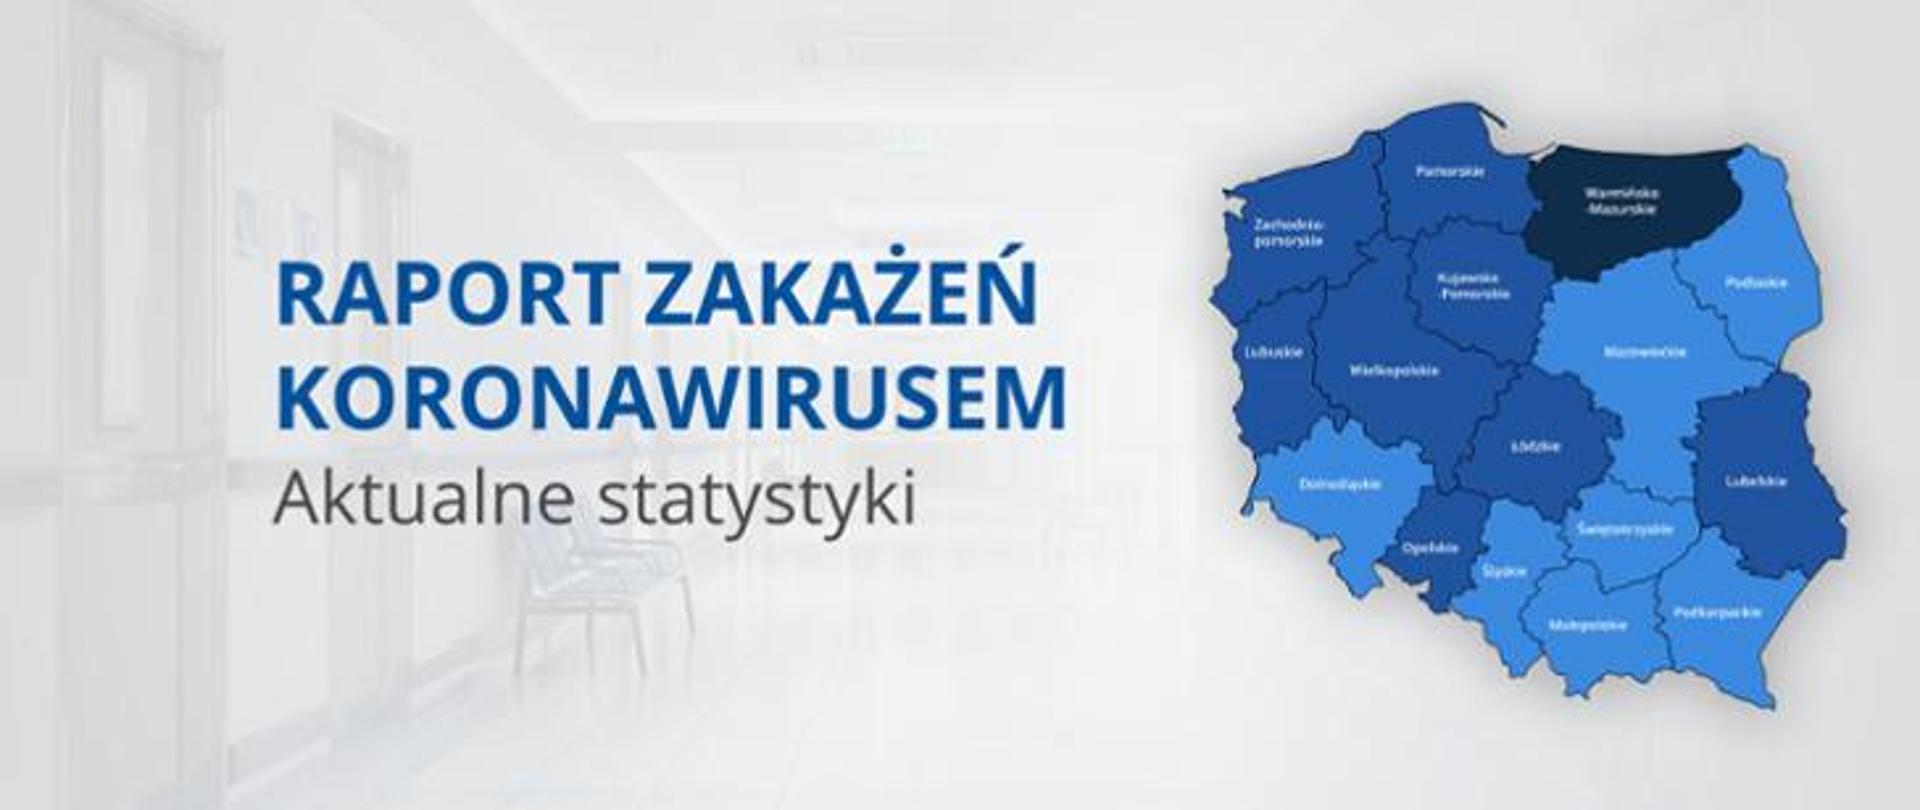 Raport zakażeń koronawirusem. Aktualne statystyki. Mapa Polski z podziałem na województwa